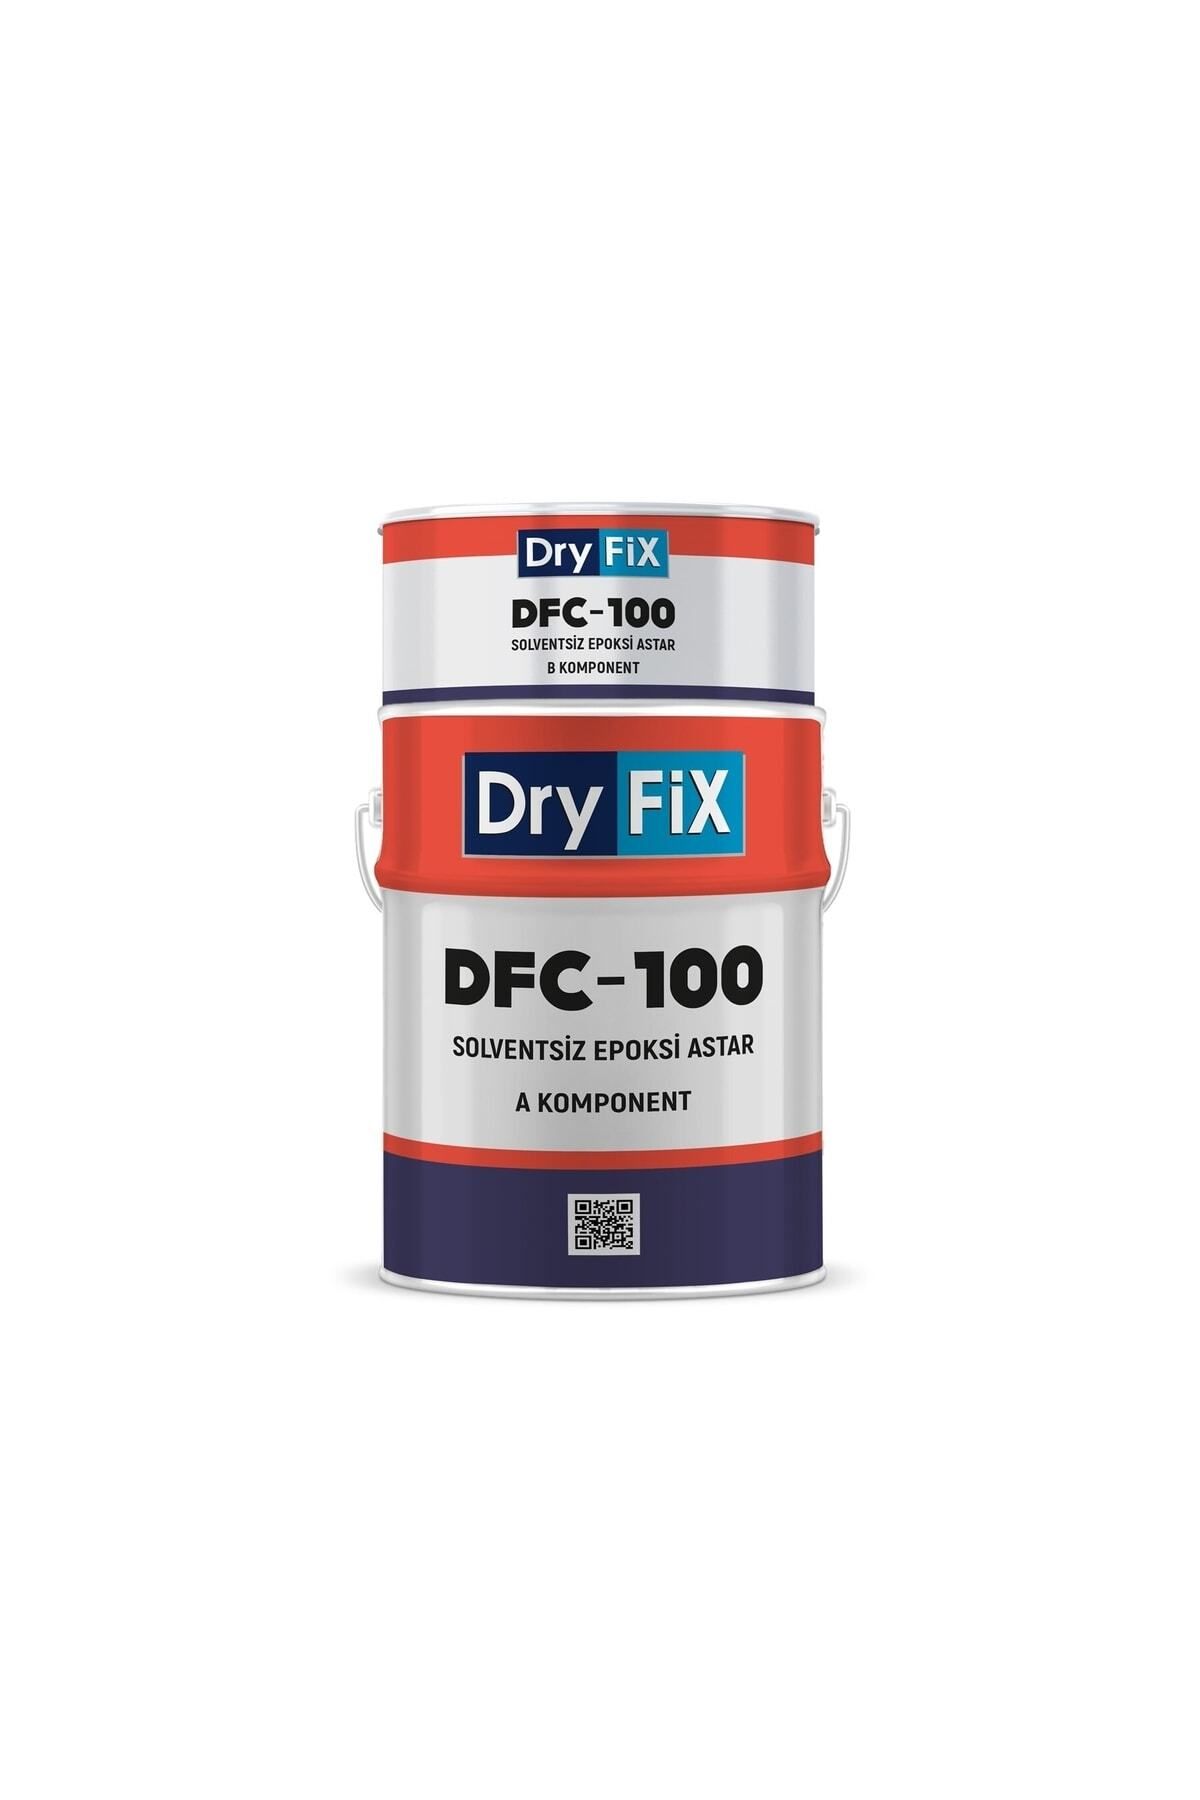 Dryfix Dfc-100 Solventsiz Epoksi Astarı Çok Amaçlı Reçine Esaslı Astar